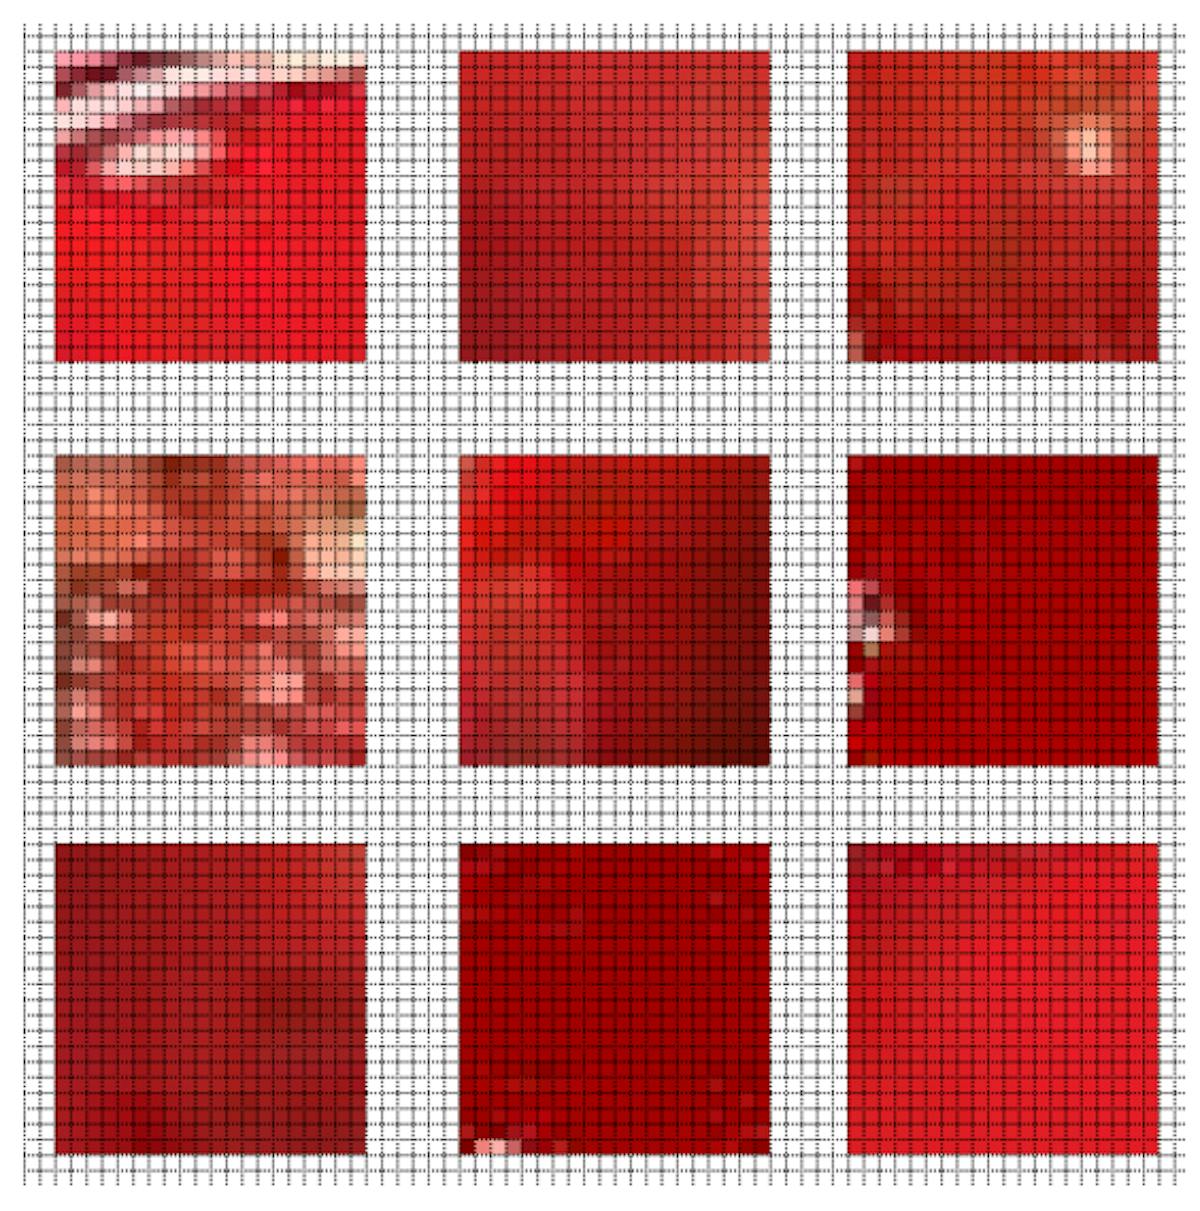 Şekil 3.2: Kan içeren 20 x 20 boyutunda örnek kırpılmış bölgeleri gösteren şekil.